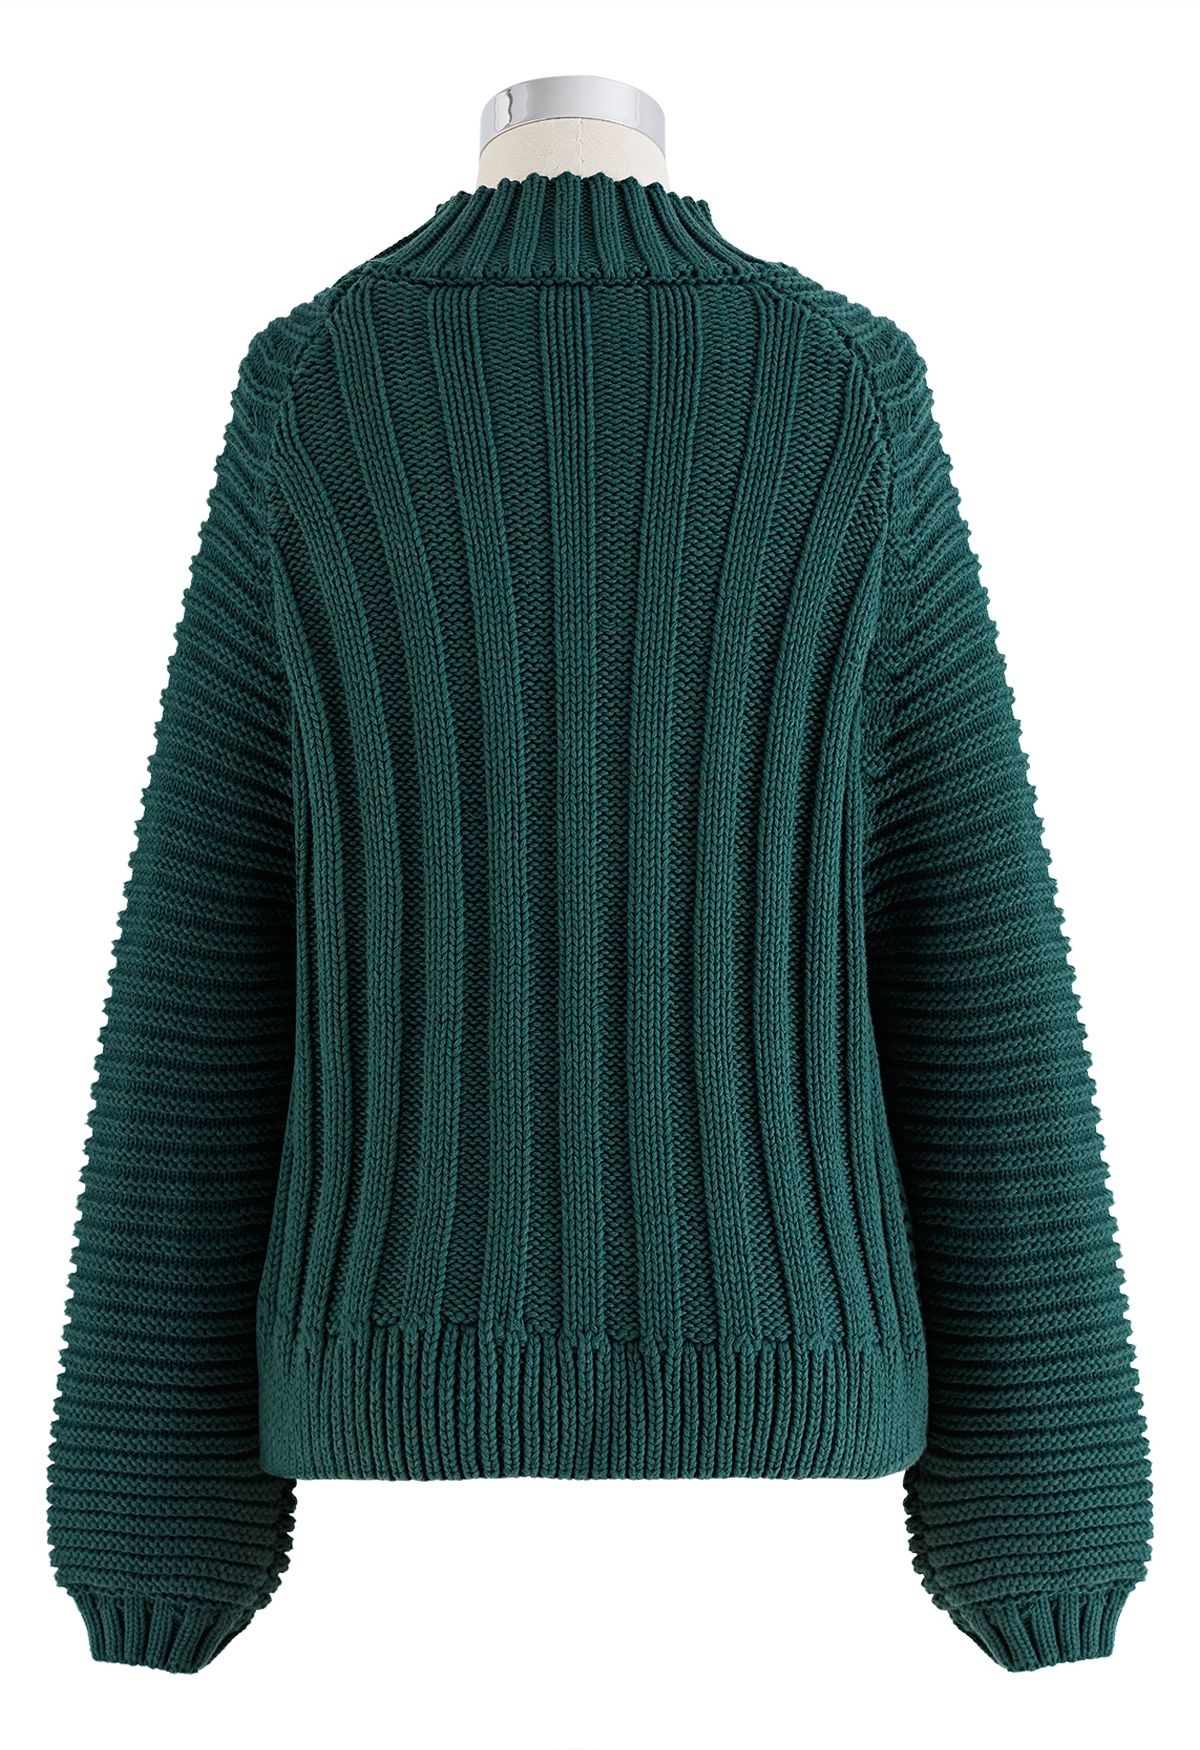 Ketyyh-chn99 Green Black Jacket Women Maggy Sweater 